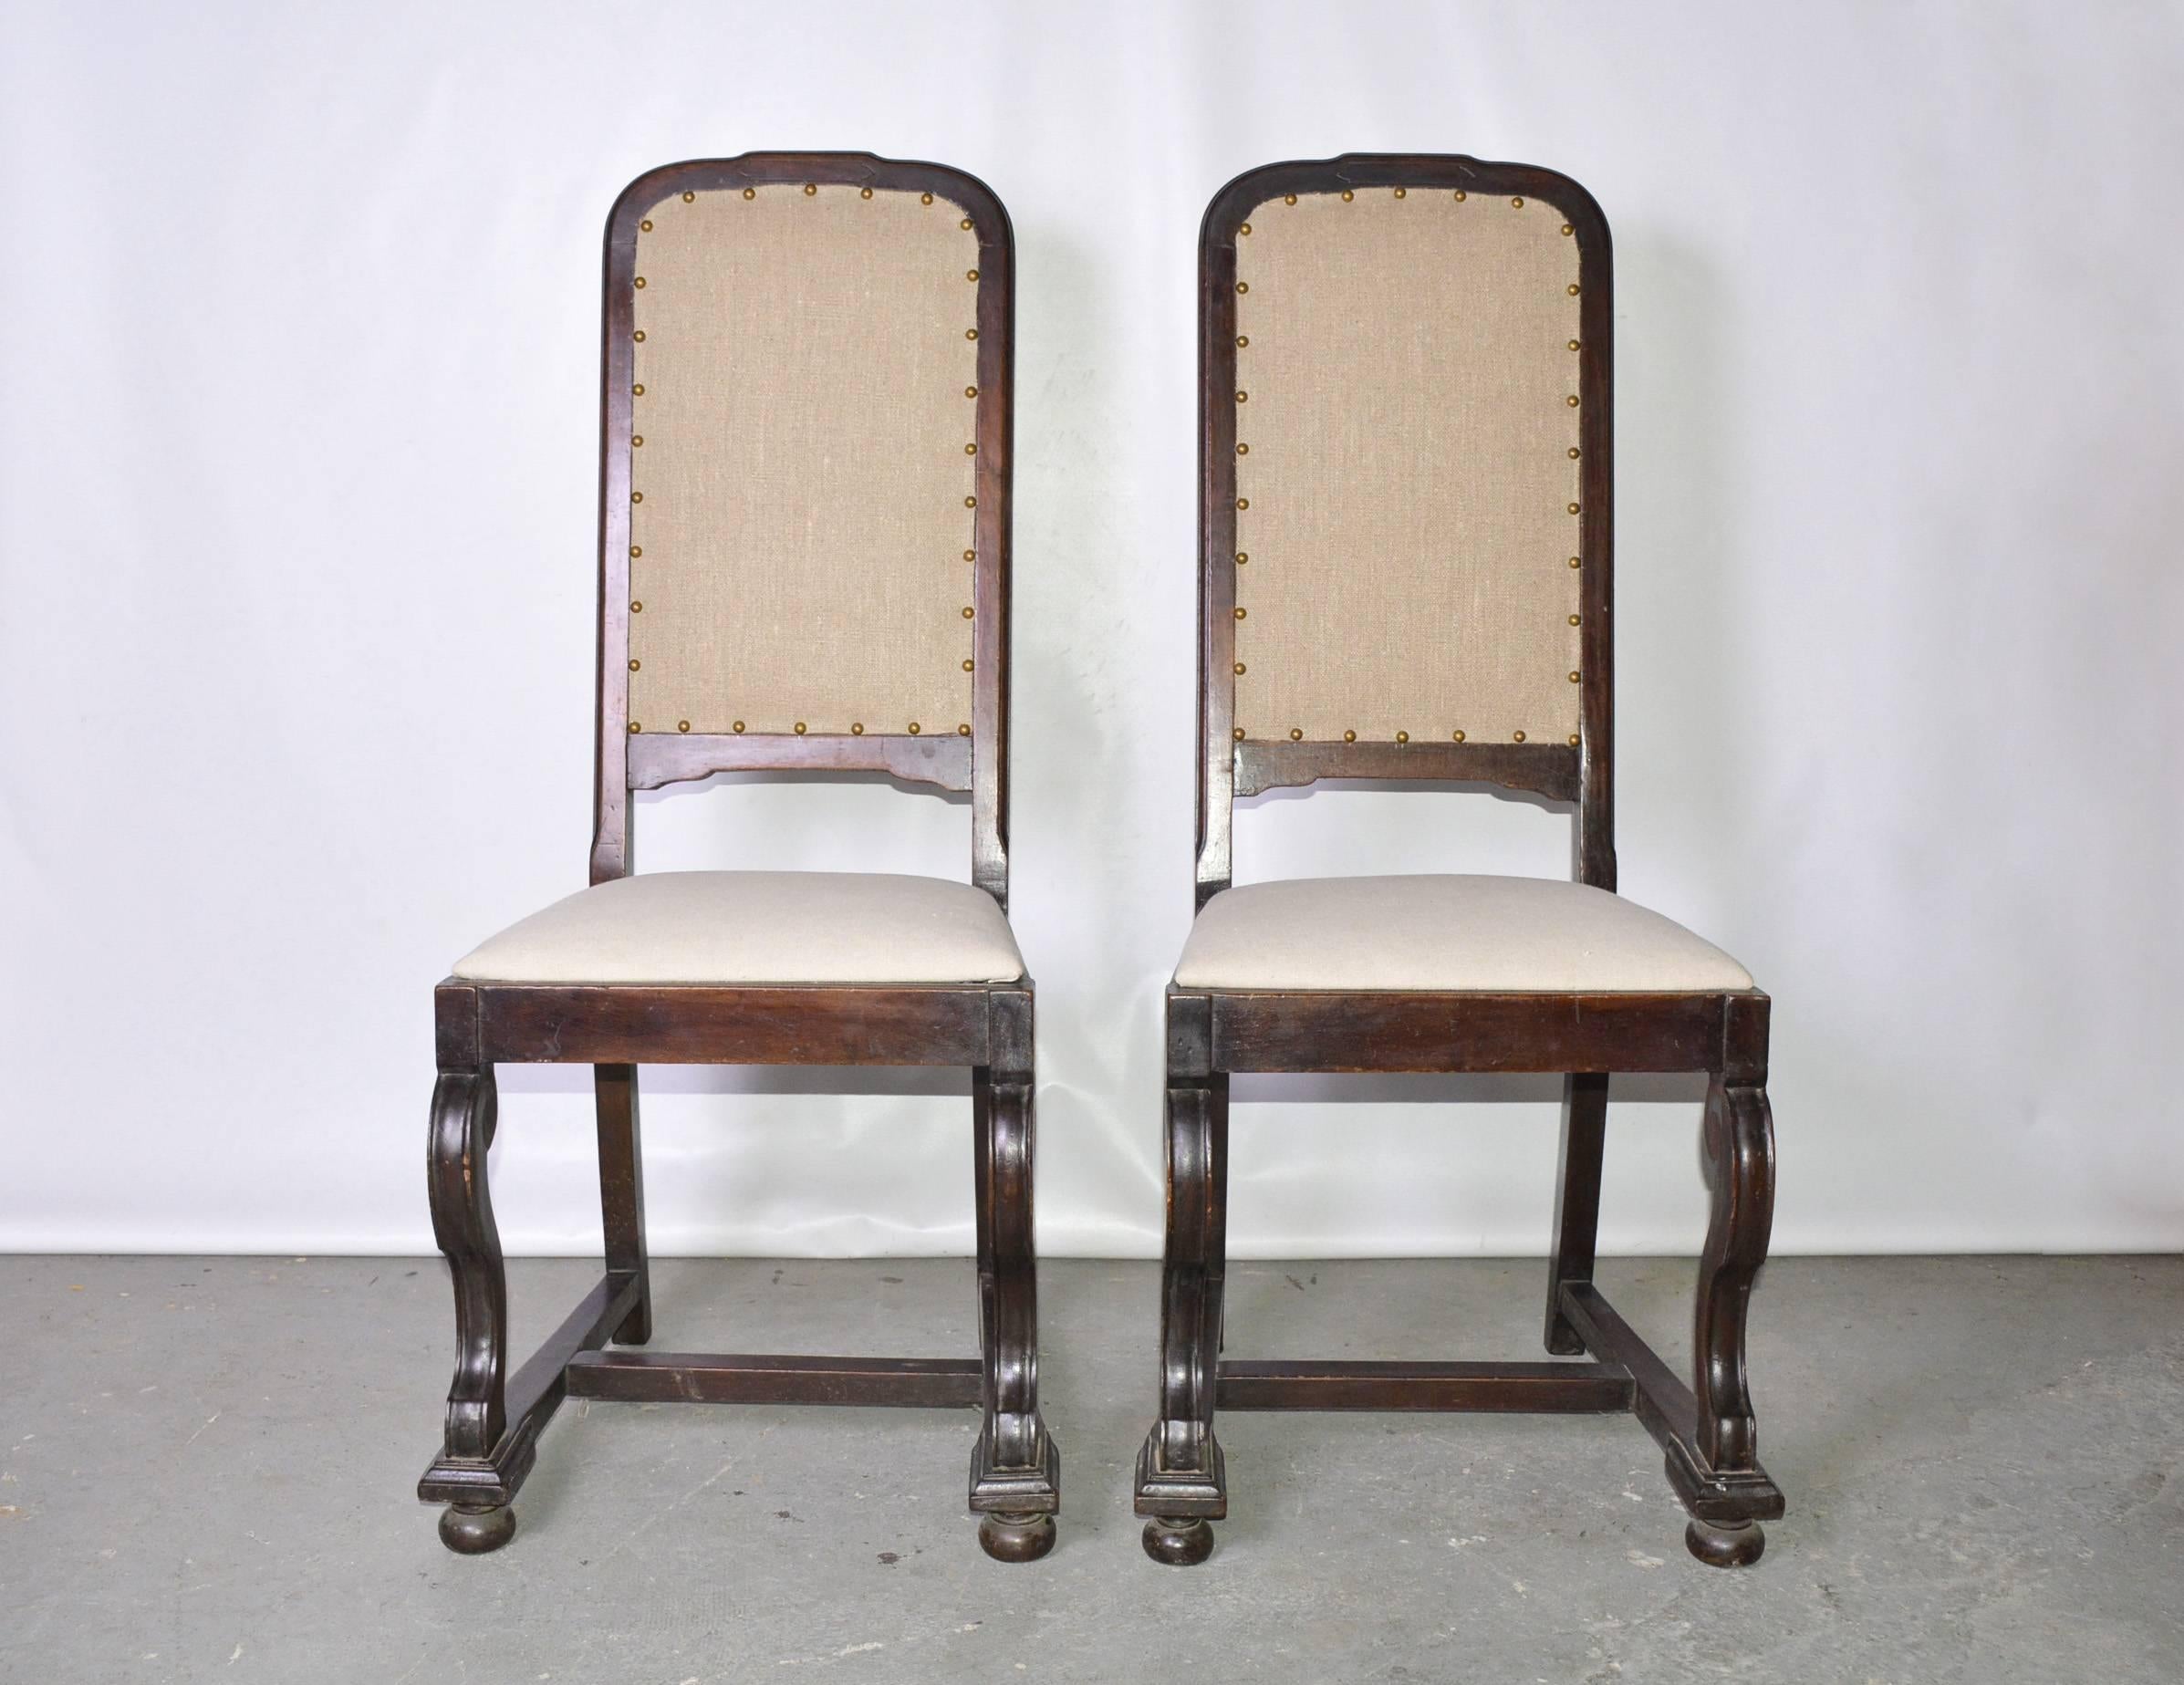 Cette paire d'anciennes chaises latérales en acajou de style jacobéen, datant de 1900, a été récemment tapissée d'une teinte de lin beige, tandis que les sièges sont recouverts d'une autre teinte complémentaire de lin beige. Pensez-y pour le hall